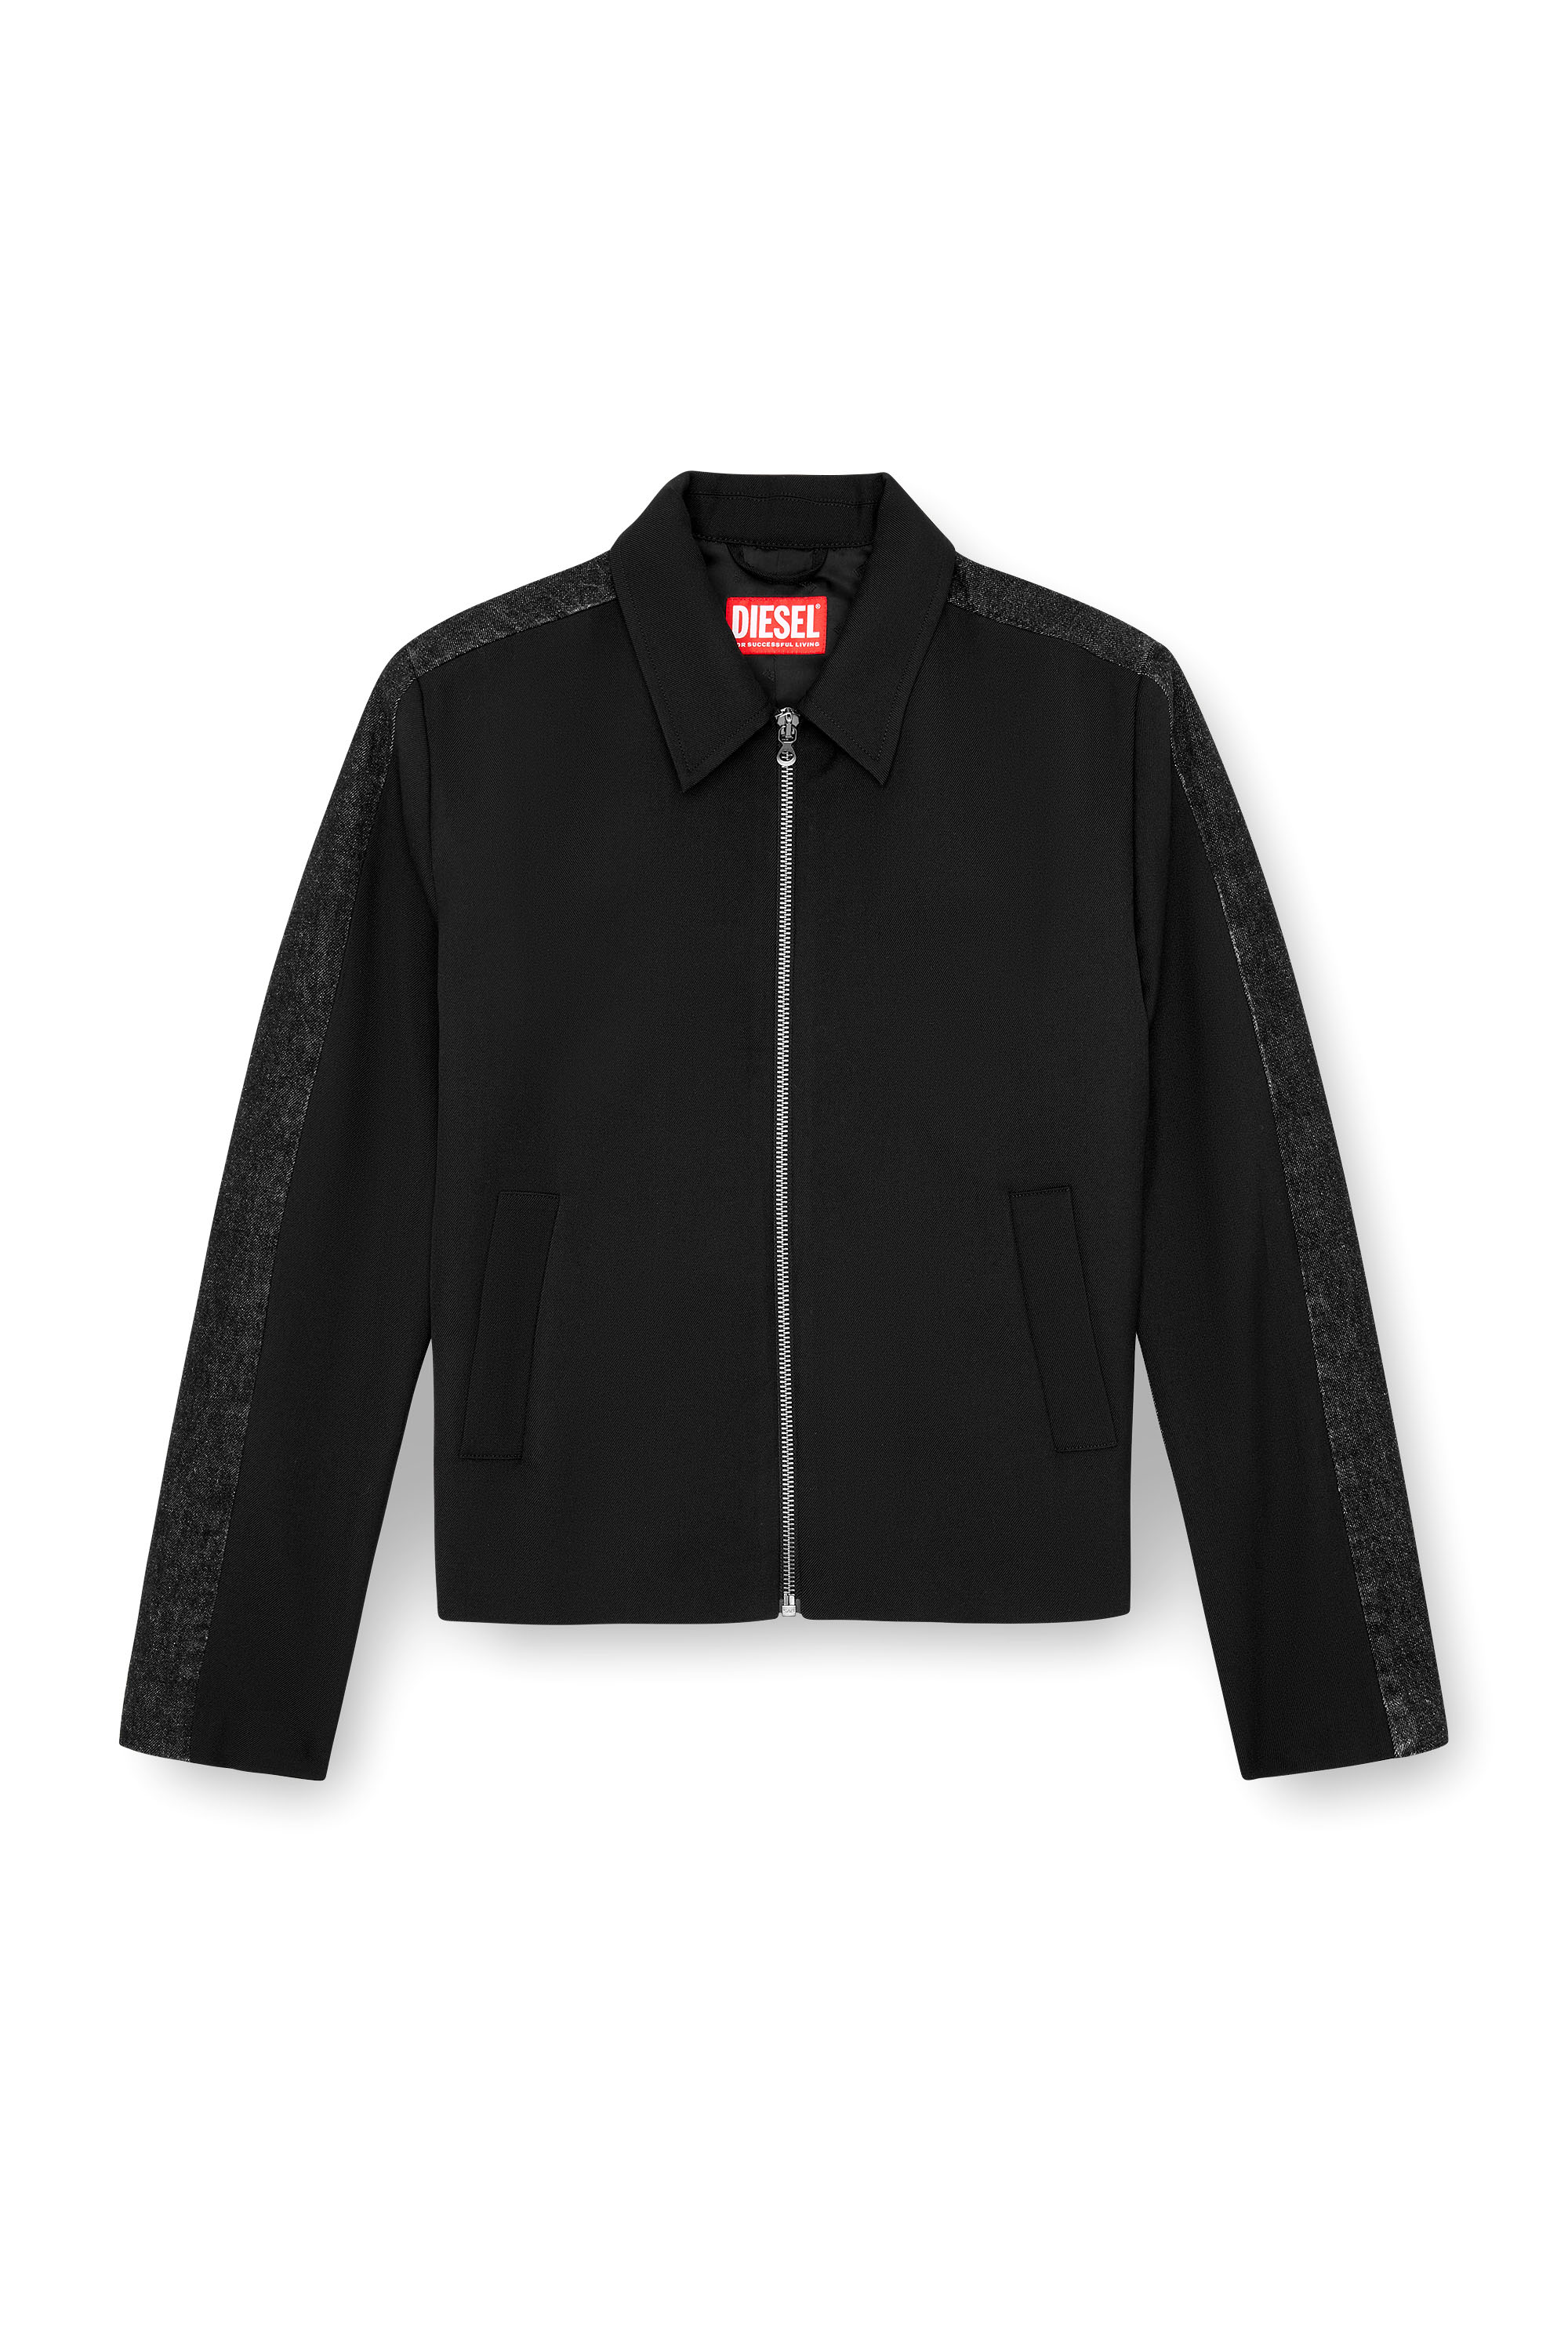 Diesel - J-RHEIN, Man Blouson jacket in wool blend and denim in Black - Image 3